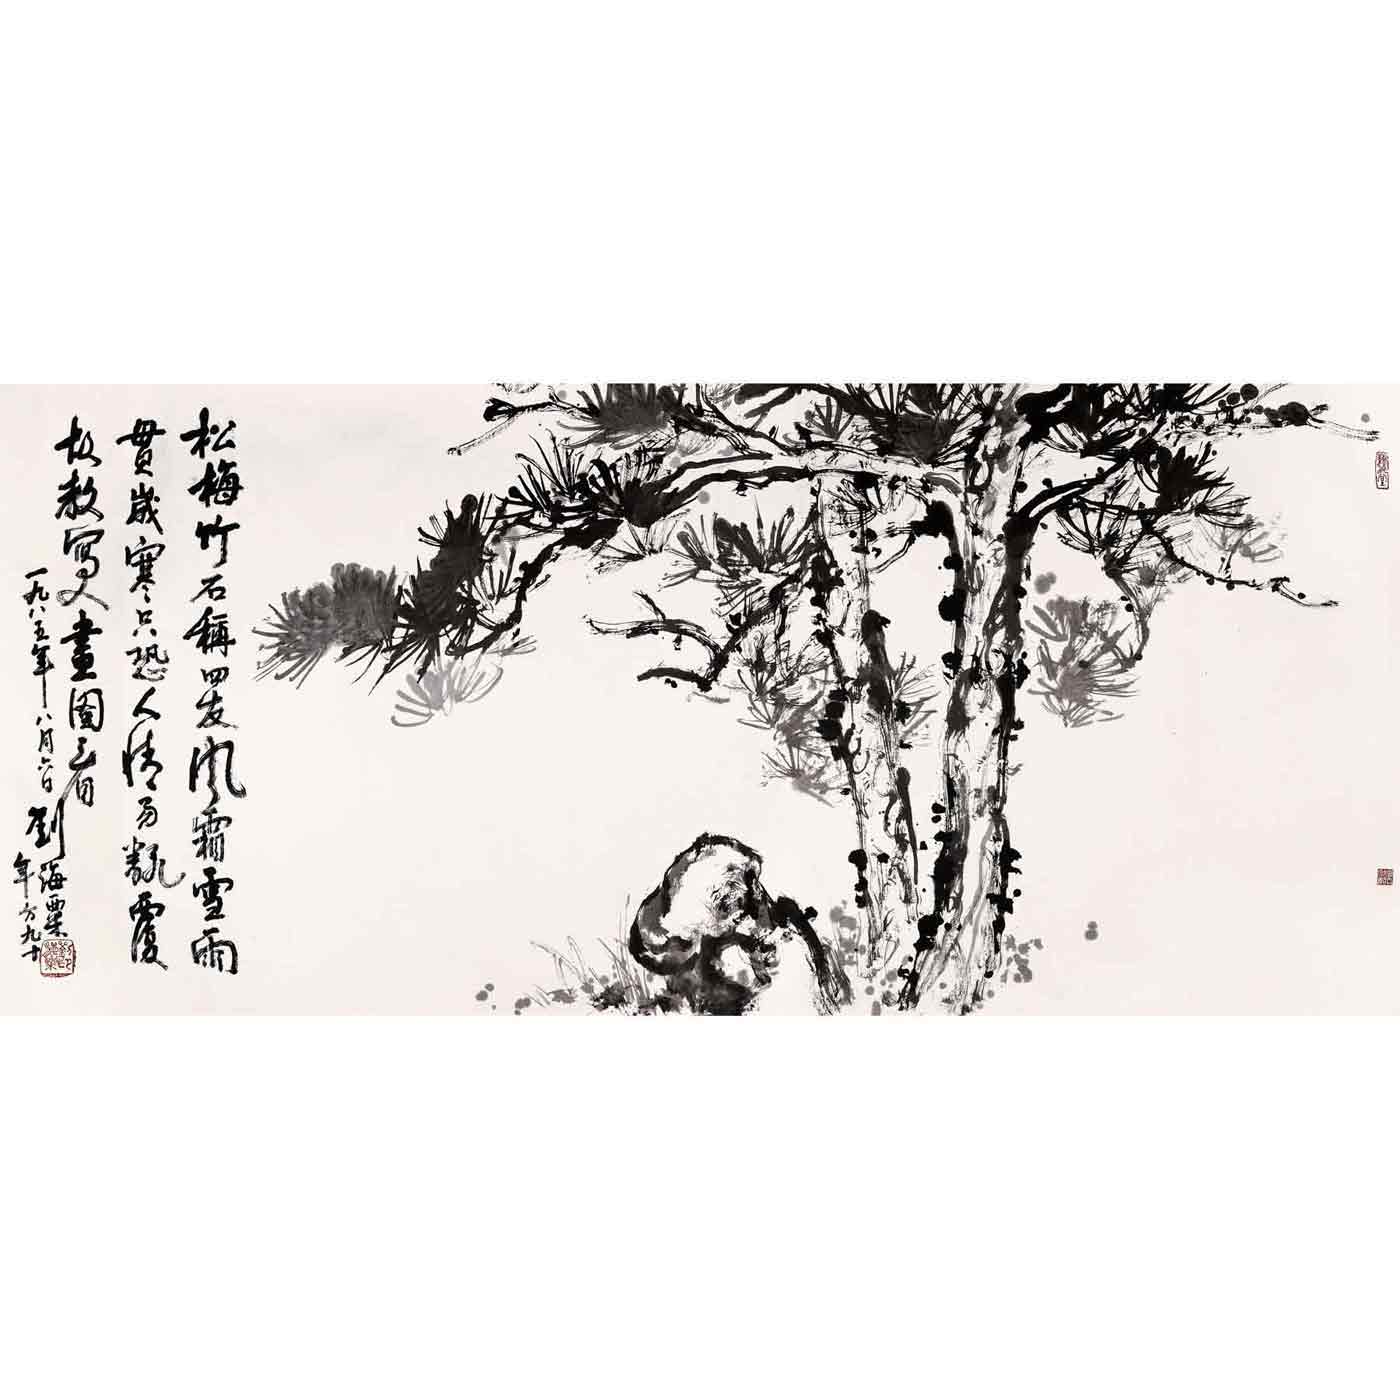 名家名人字画中国画花鸟横幅刘海粟-双松图刘海粟-双松图纸微喷